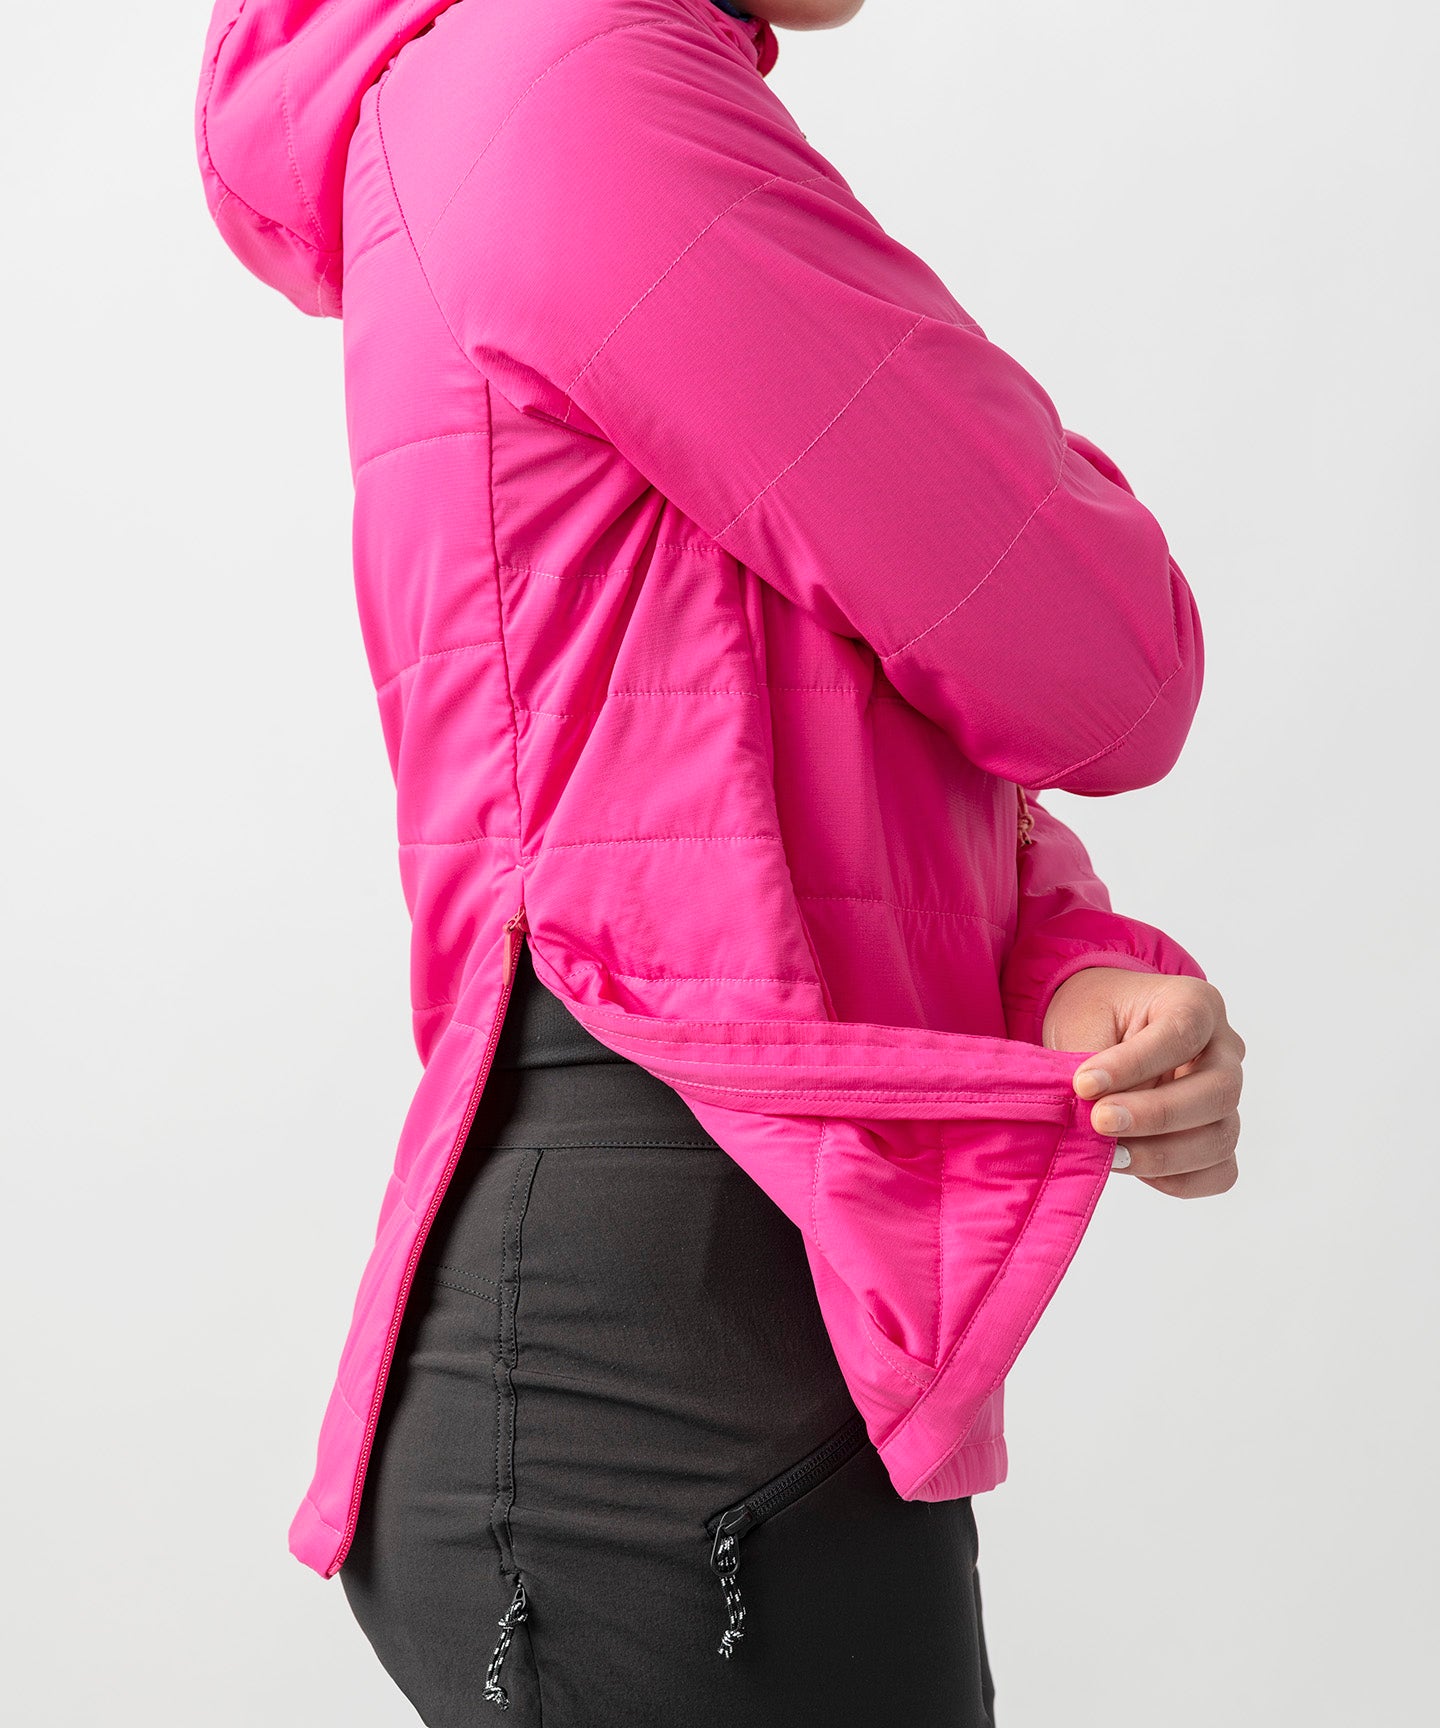 Nologo Black Fur-Lined Hooded Jacket For Girls | NLKJBKJ-011 | Cilory.com